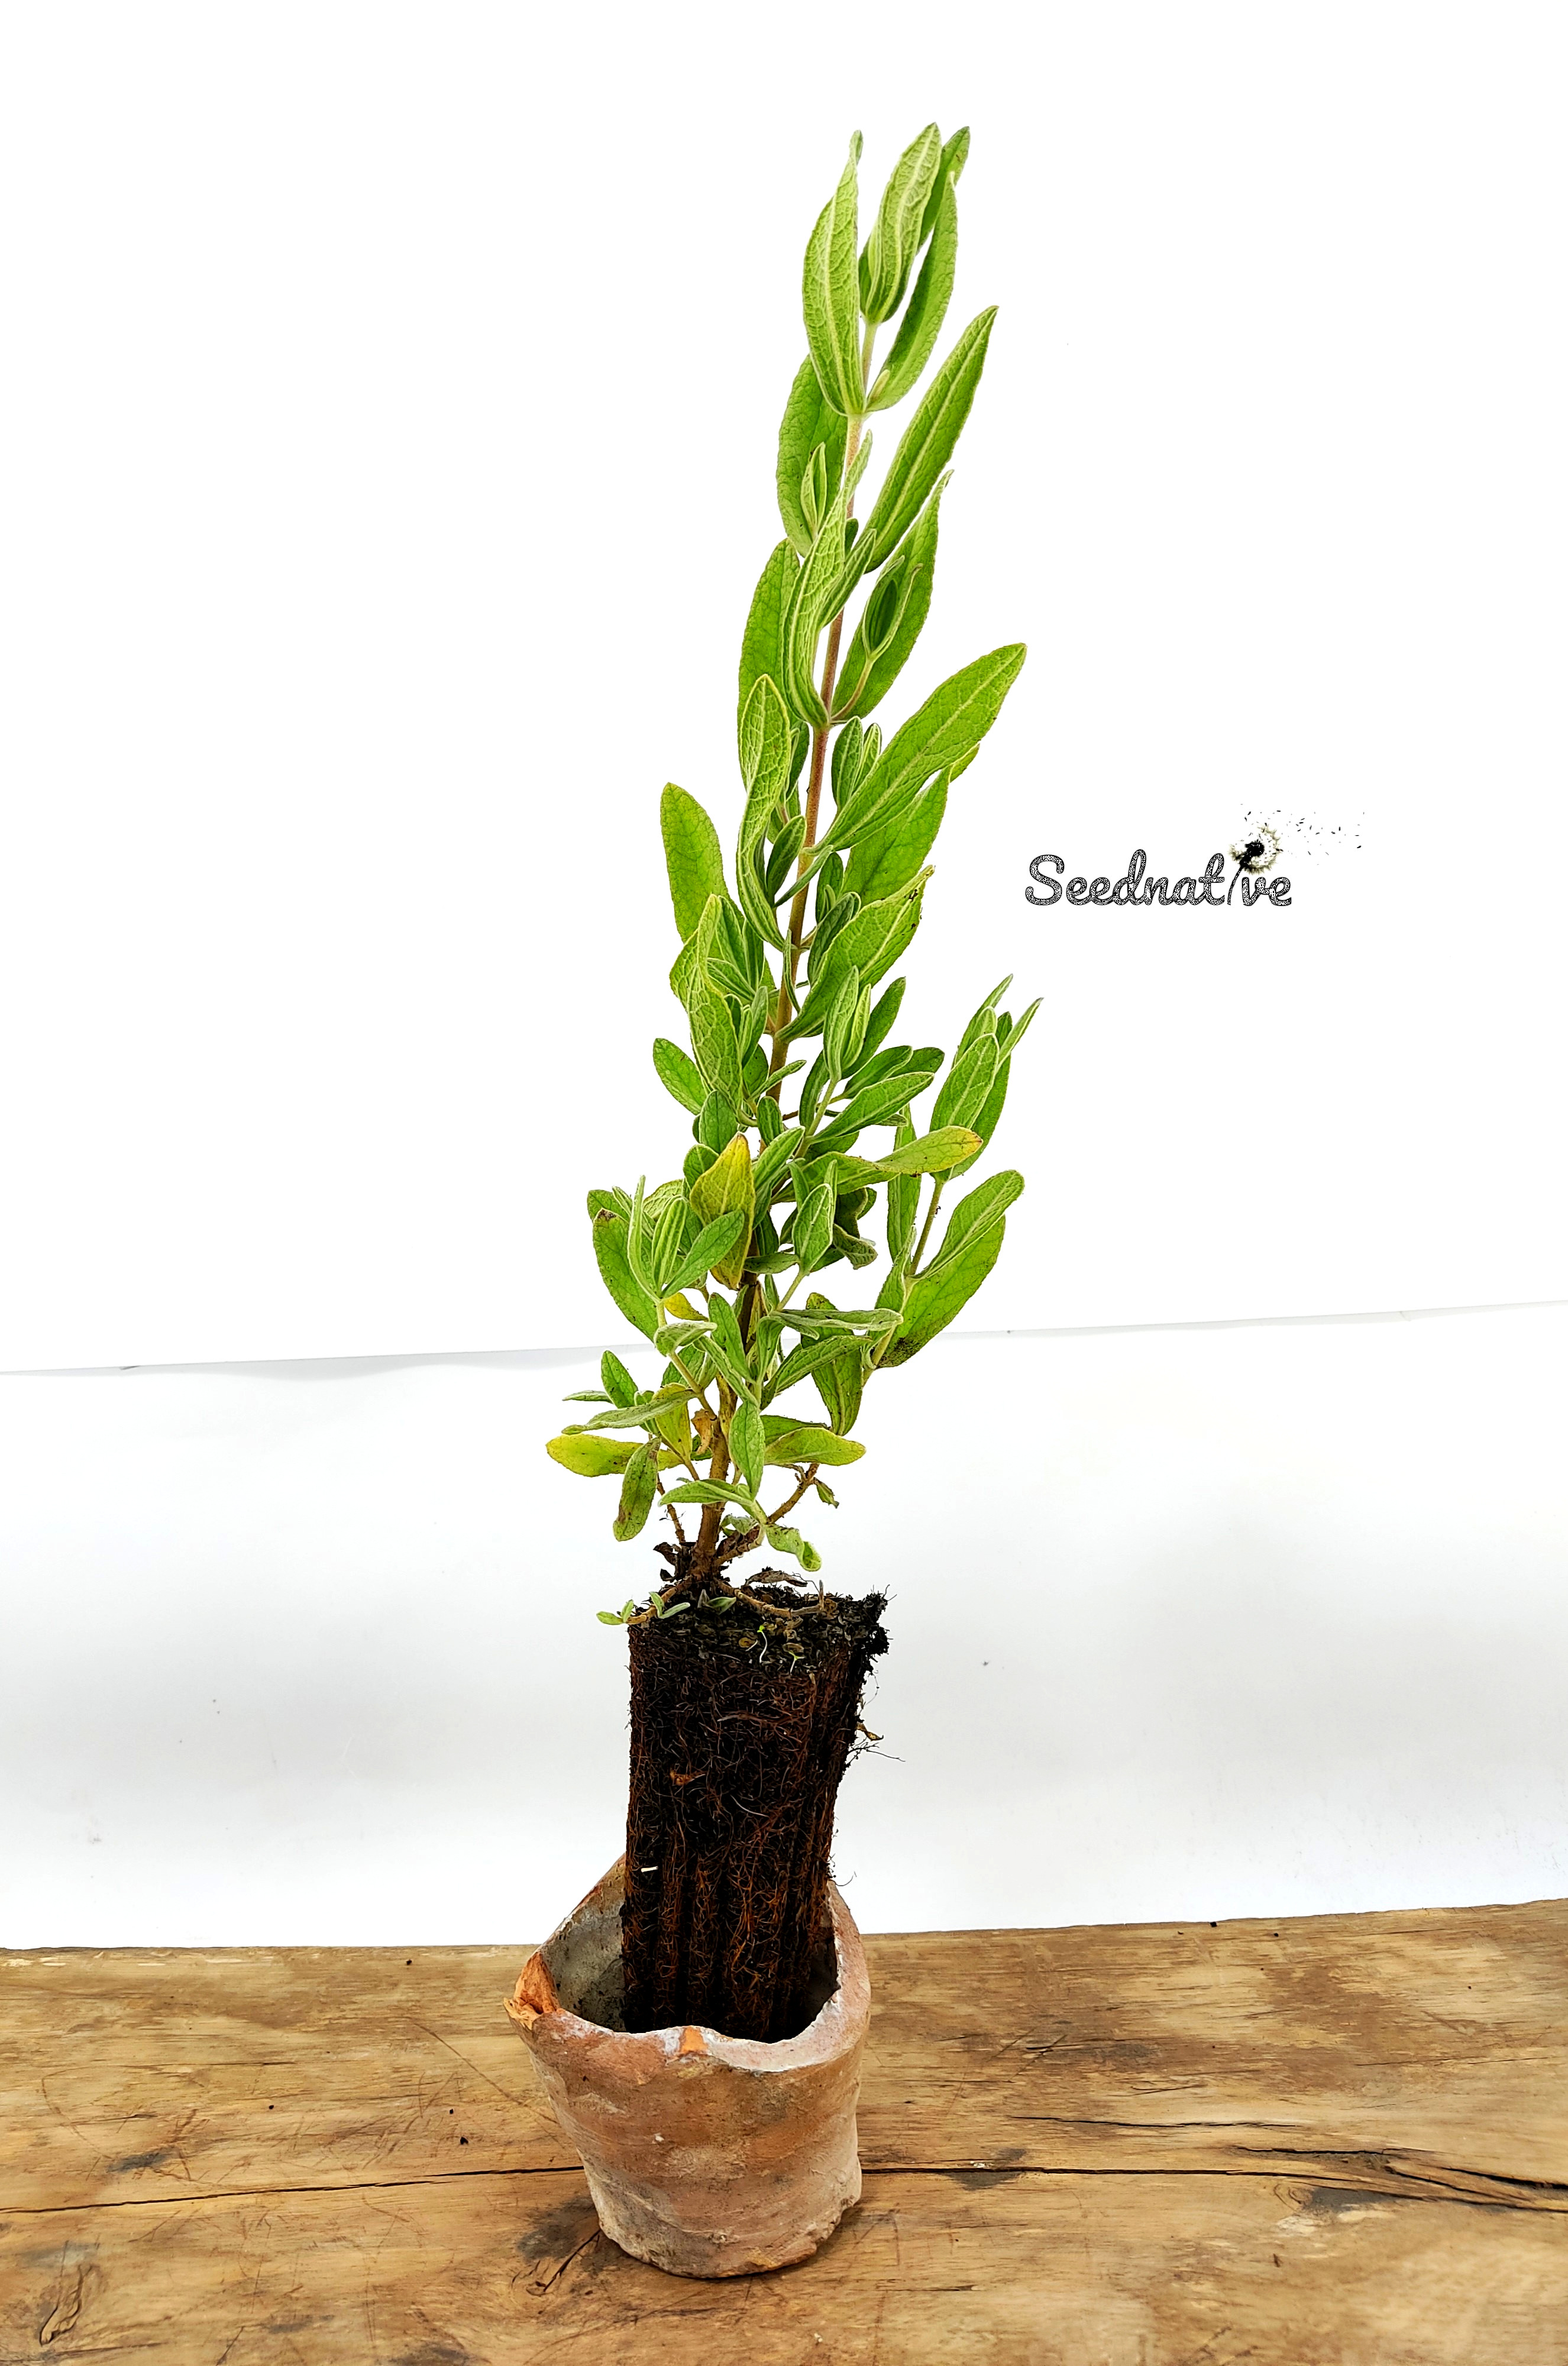 Planta Cistus albidus - Jara blanca - 2 Años